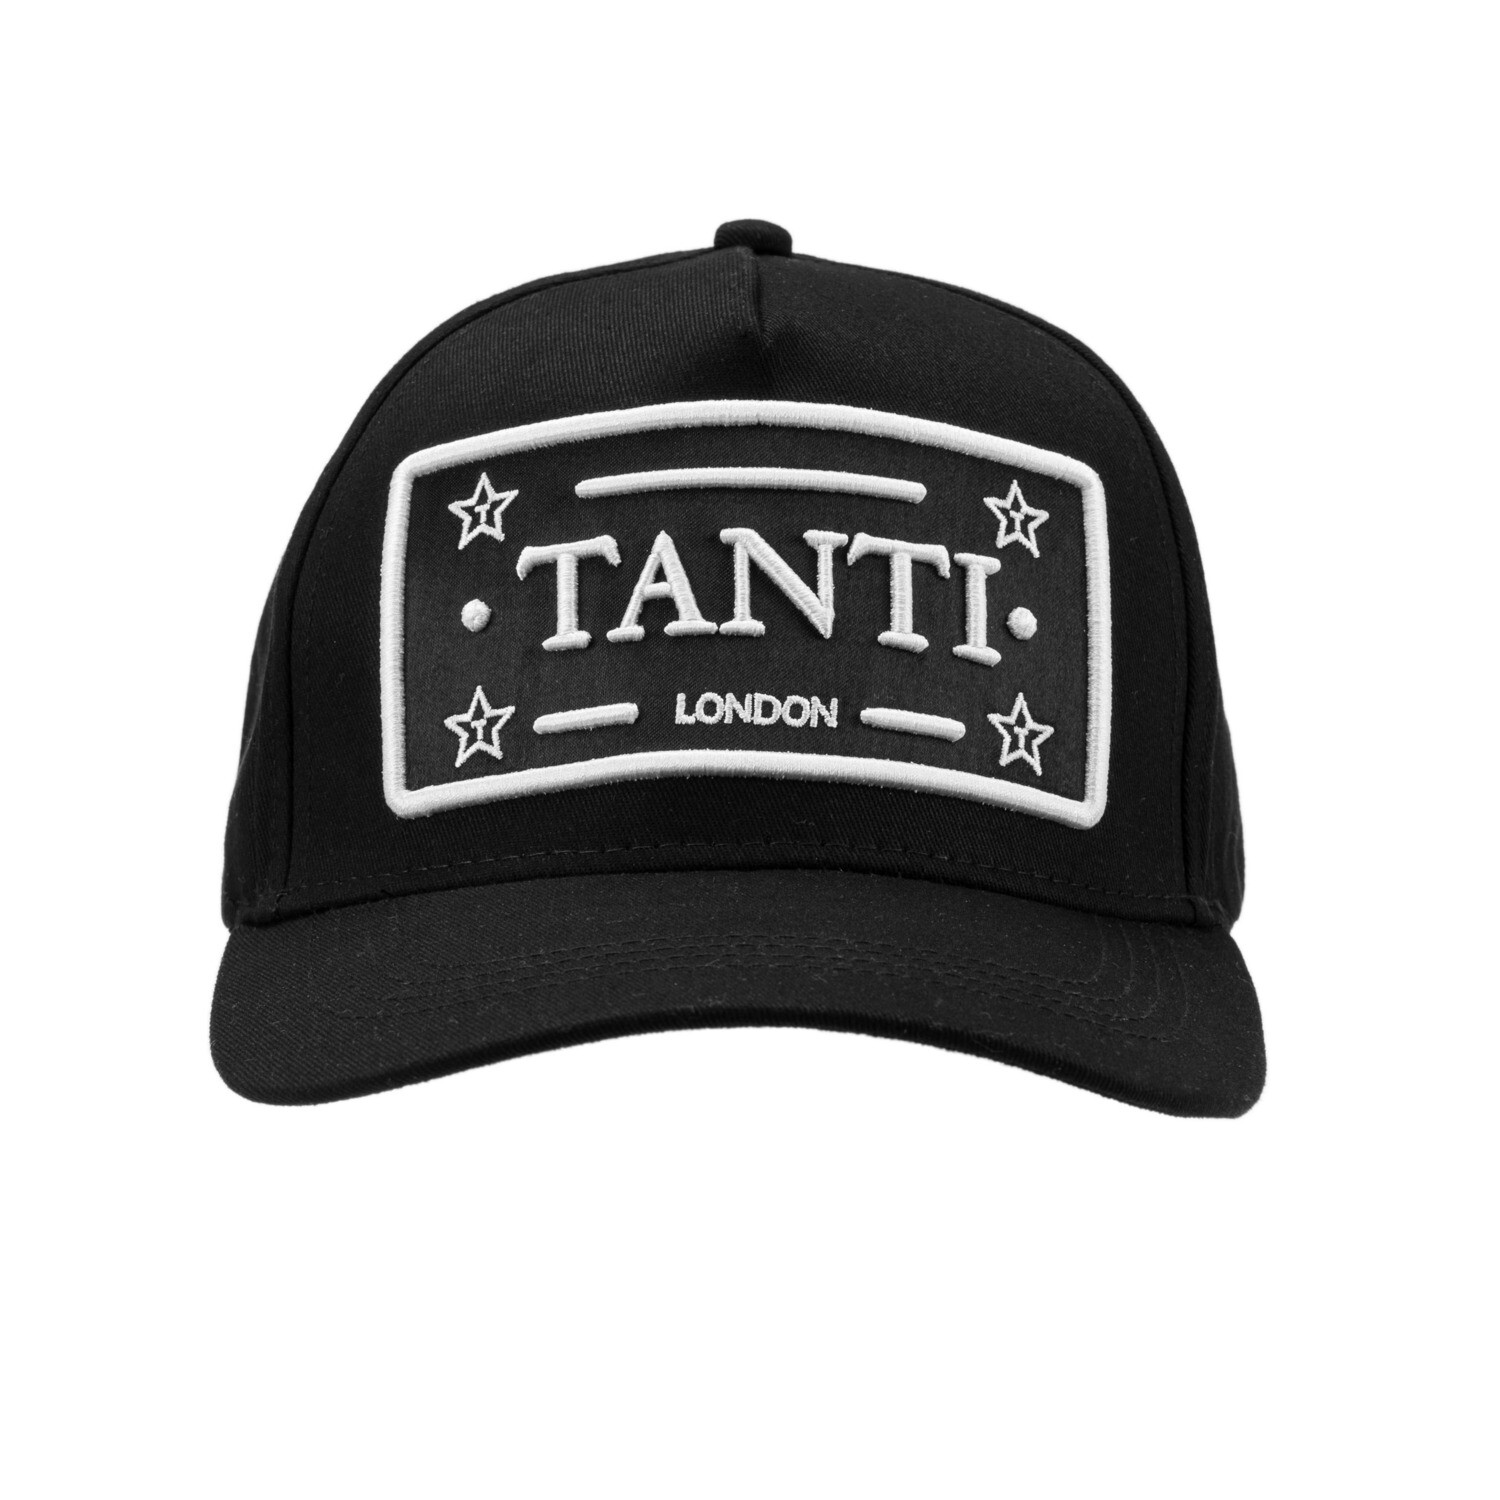 TANTI BADGE BASEBALL CAP